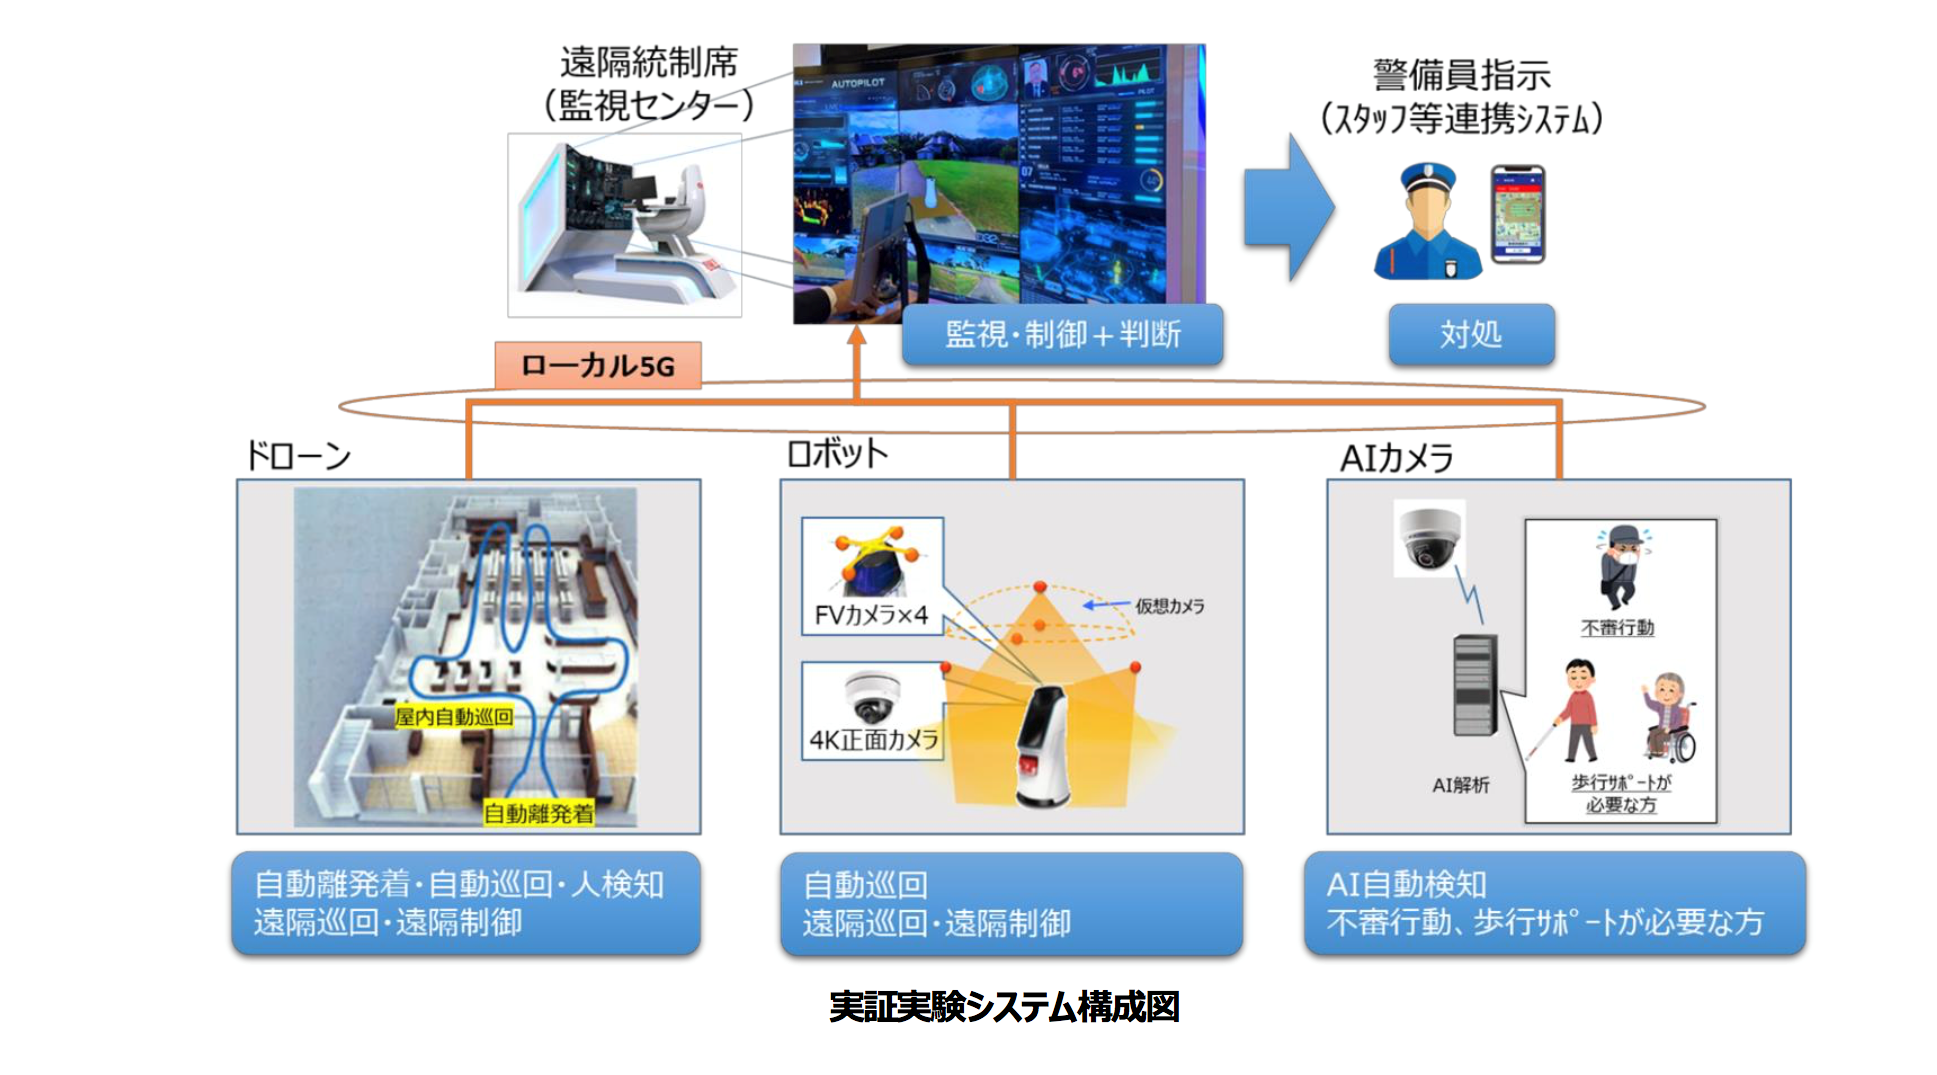 警備モデルの高度化を図る実証実験の概要(ALSOK、京浜急行電鉄、NTTコミュニケーションズ)